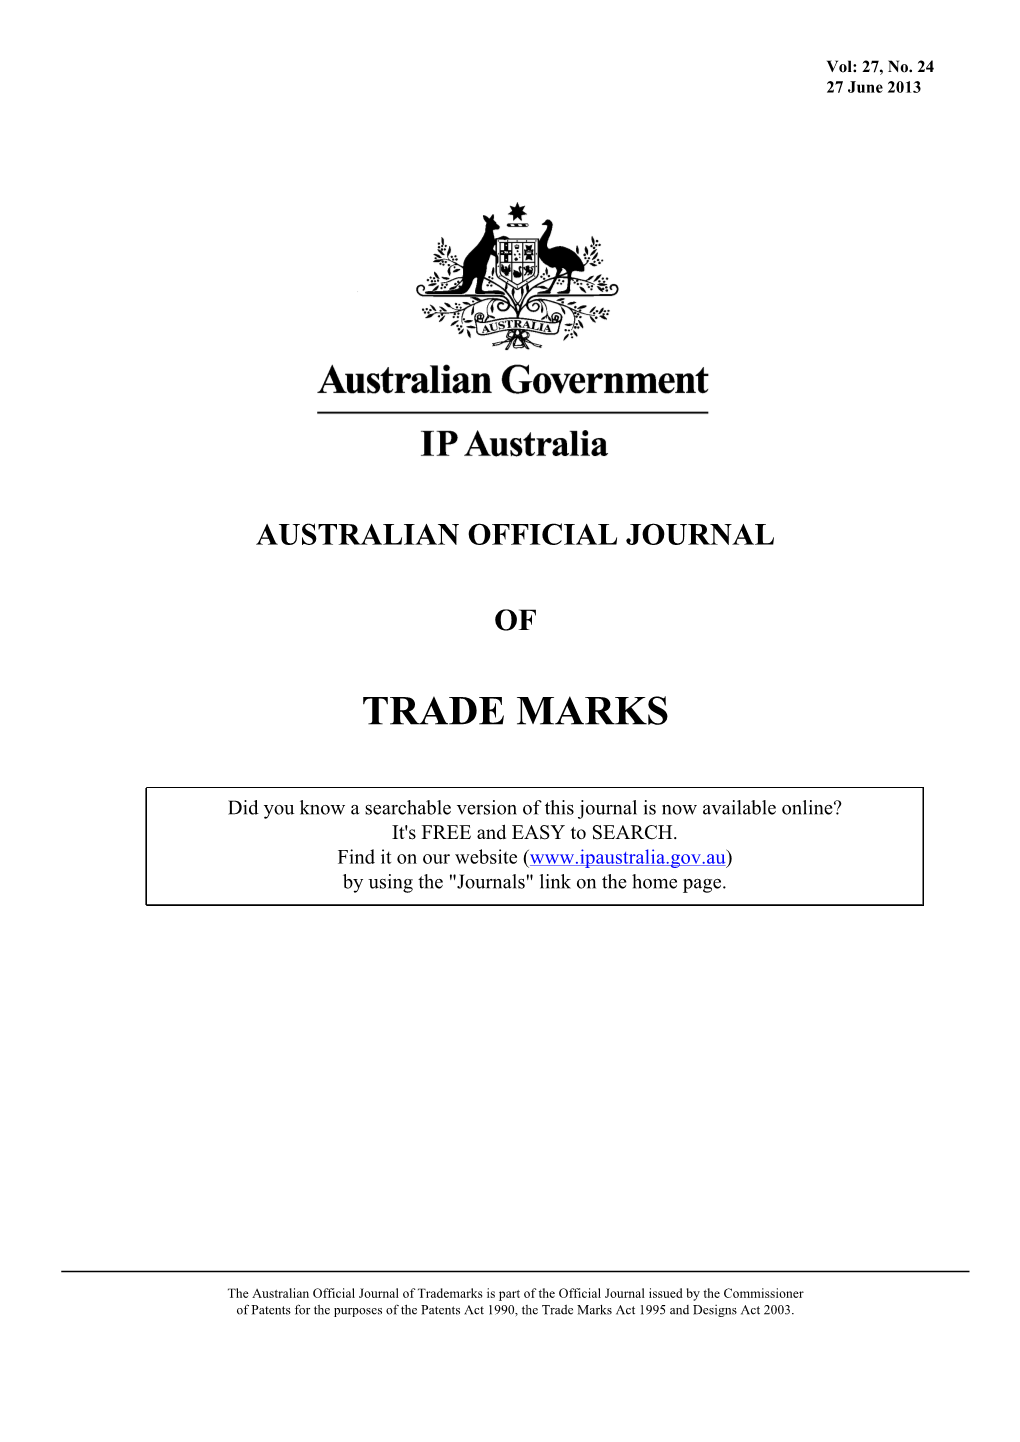 AUSTRALIAN OFFICIAL JOURNAL of TRADE MARKS 27 June 2013